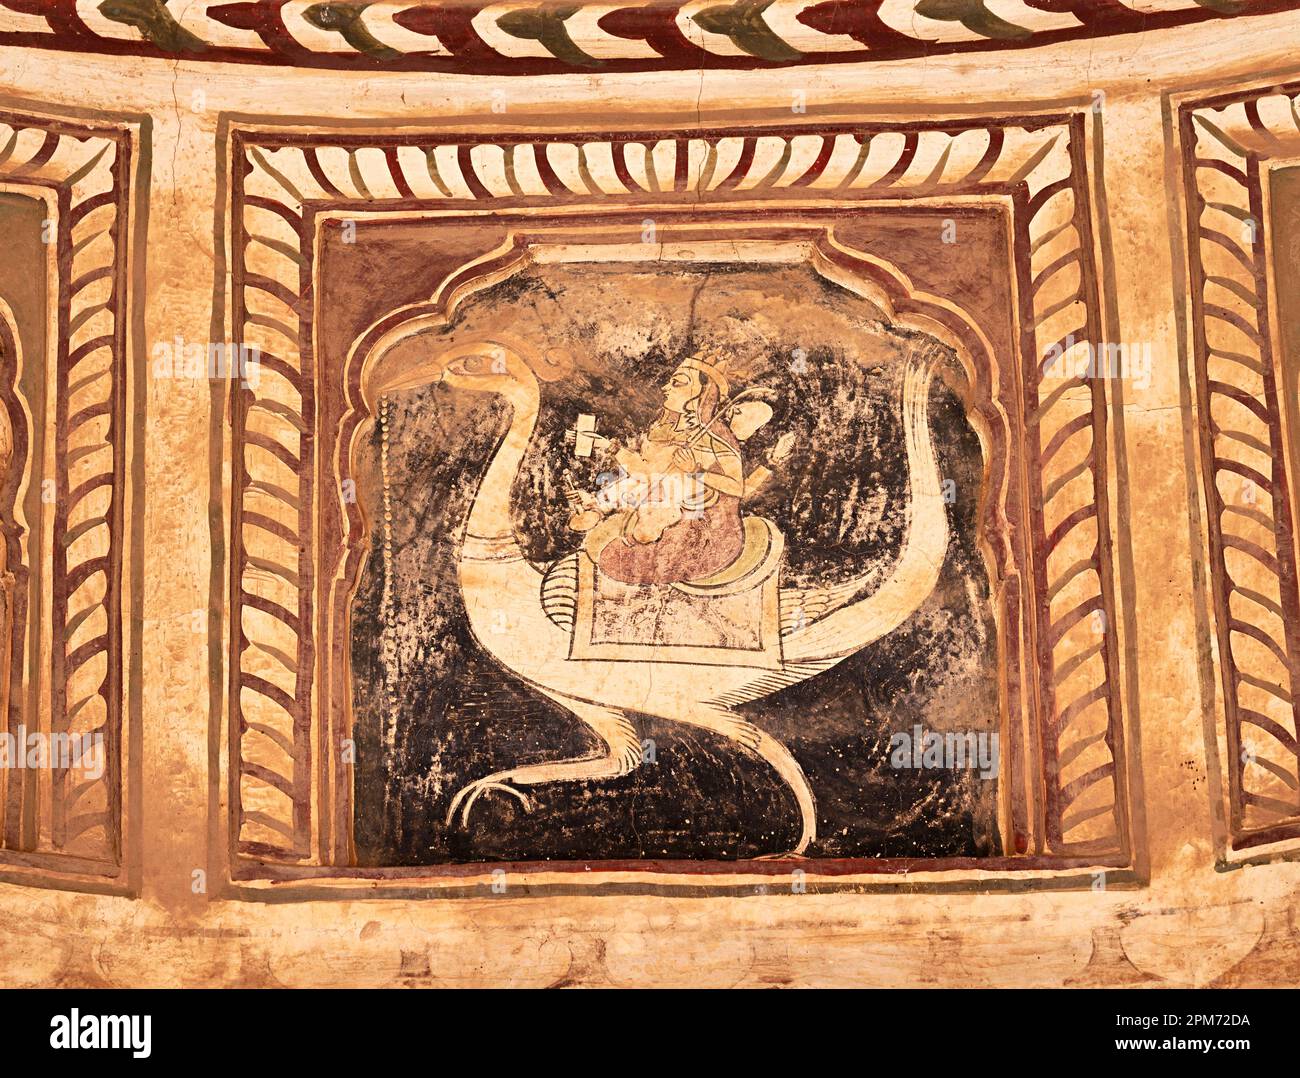 Peintures mythologiques colorées sur le plafond d'un vieux chhatri (cenotaph), Seth Anantram Podar et de la famille ki smarak rupi chhatri, situé à Ramgar Banque D'Images